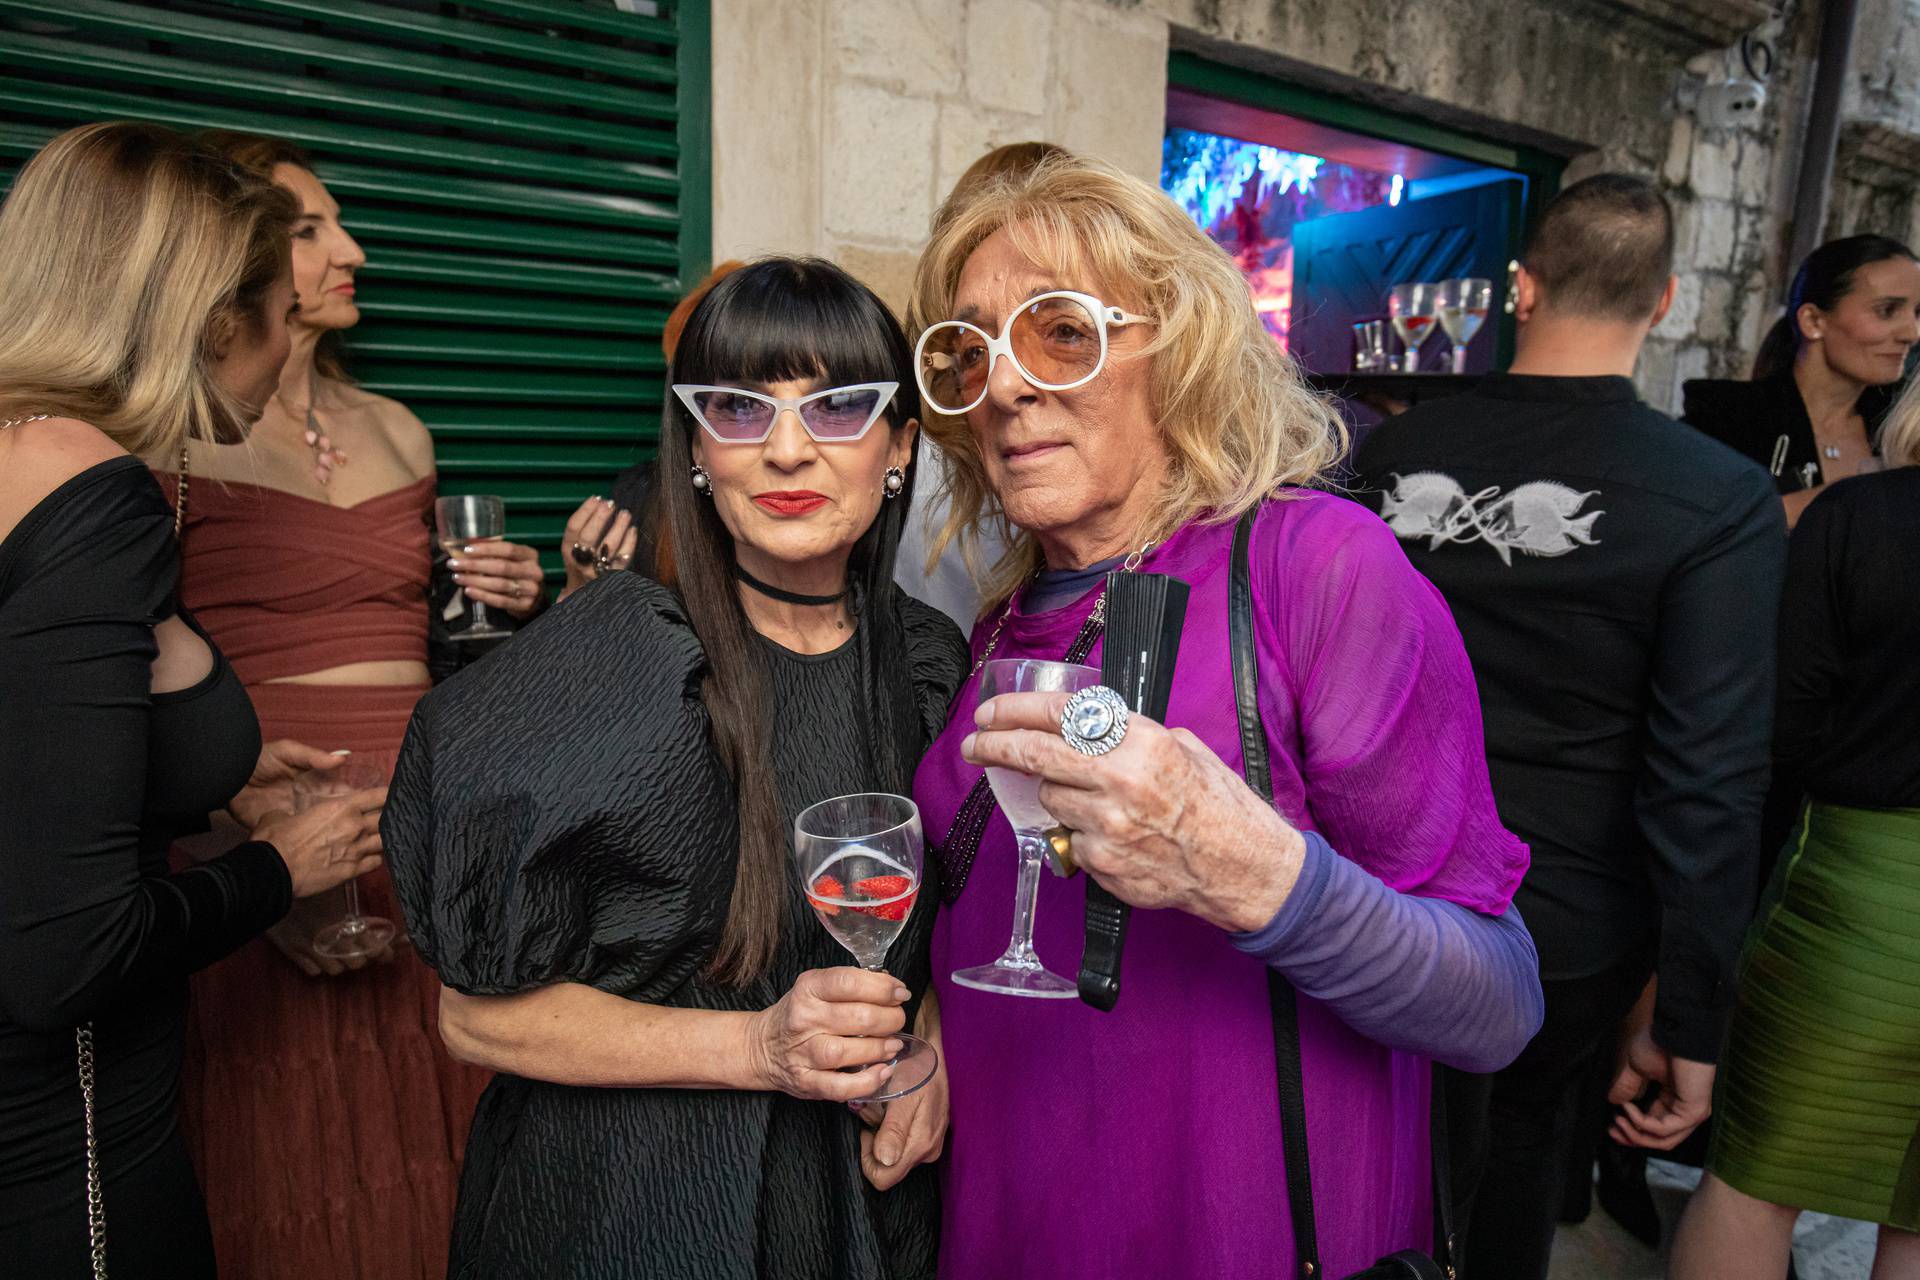 Dubrovnik: Otvoren novi bar "Milk", prvi gay bar u gradu